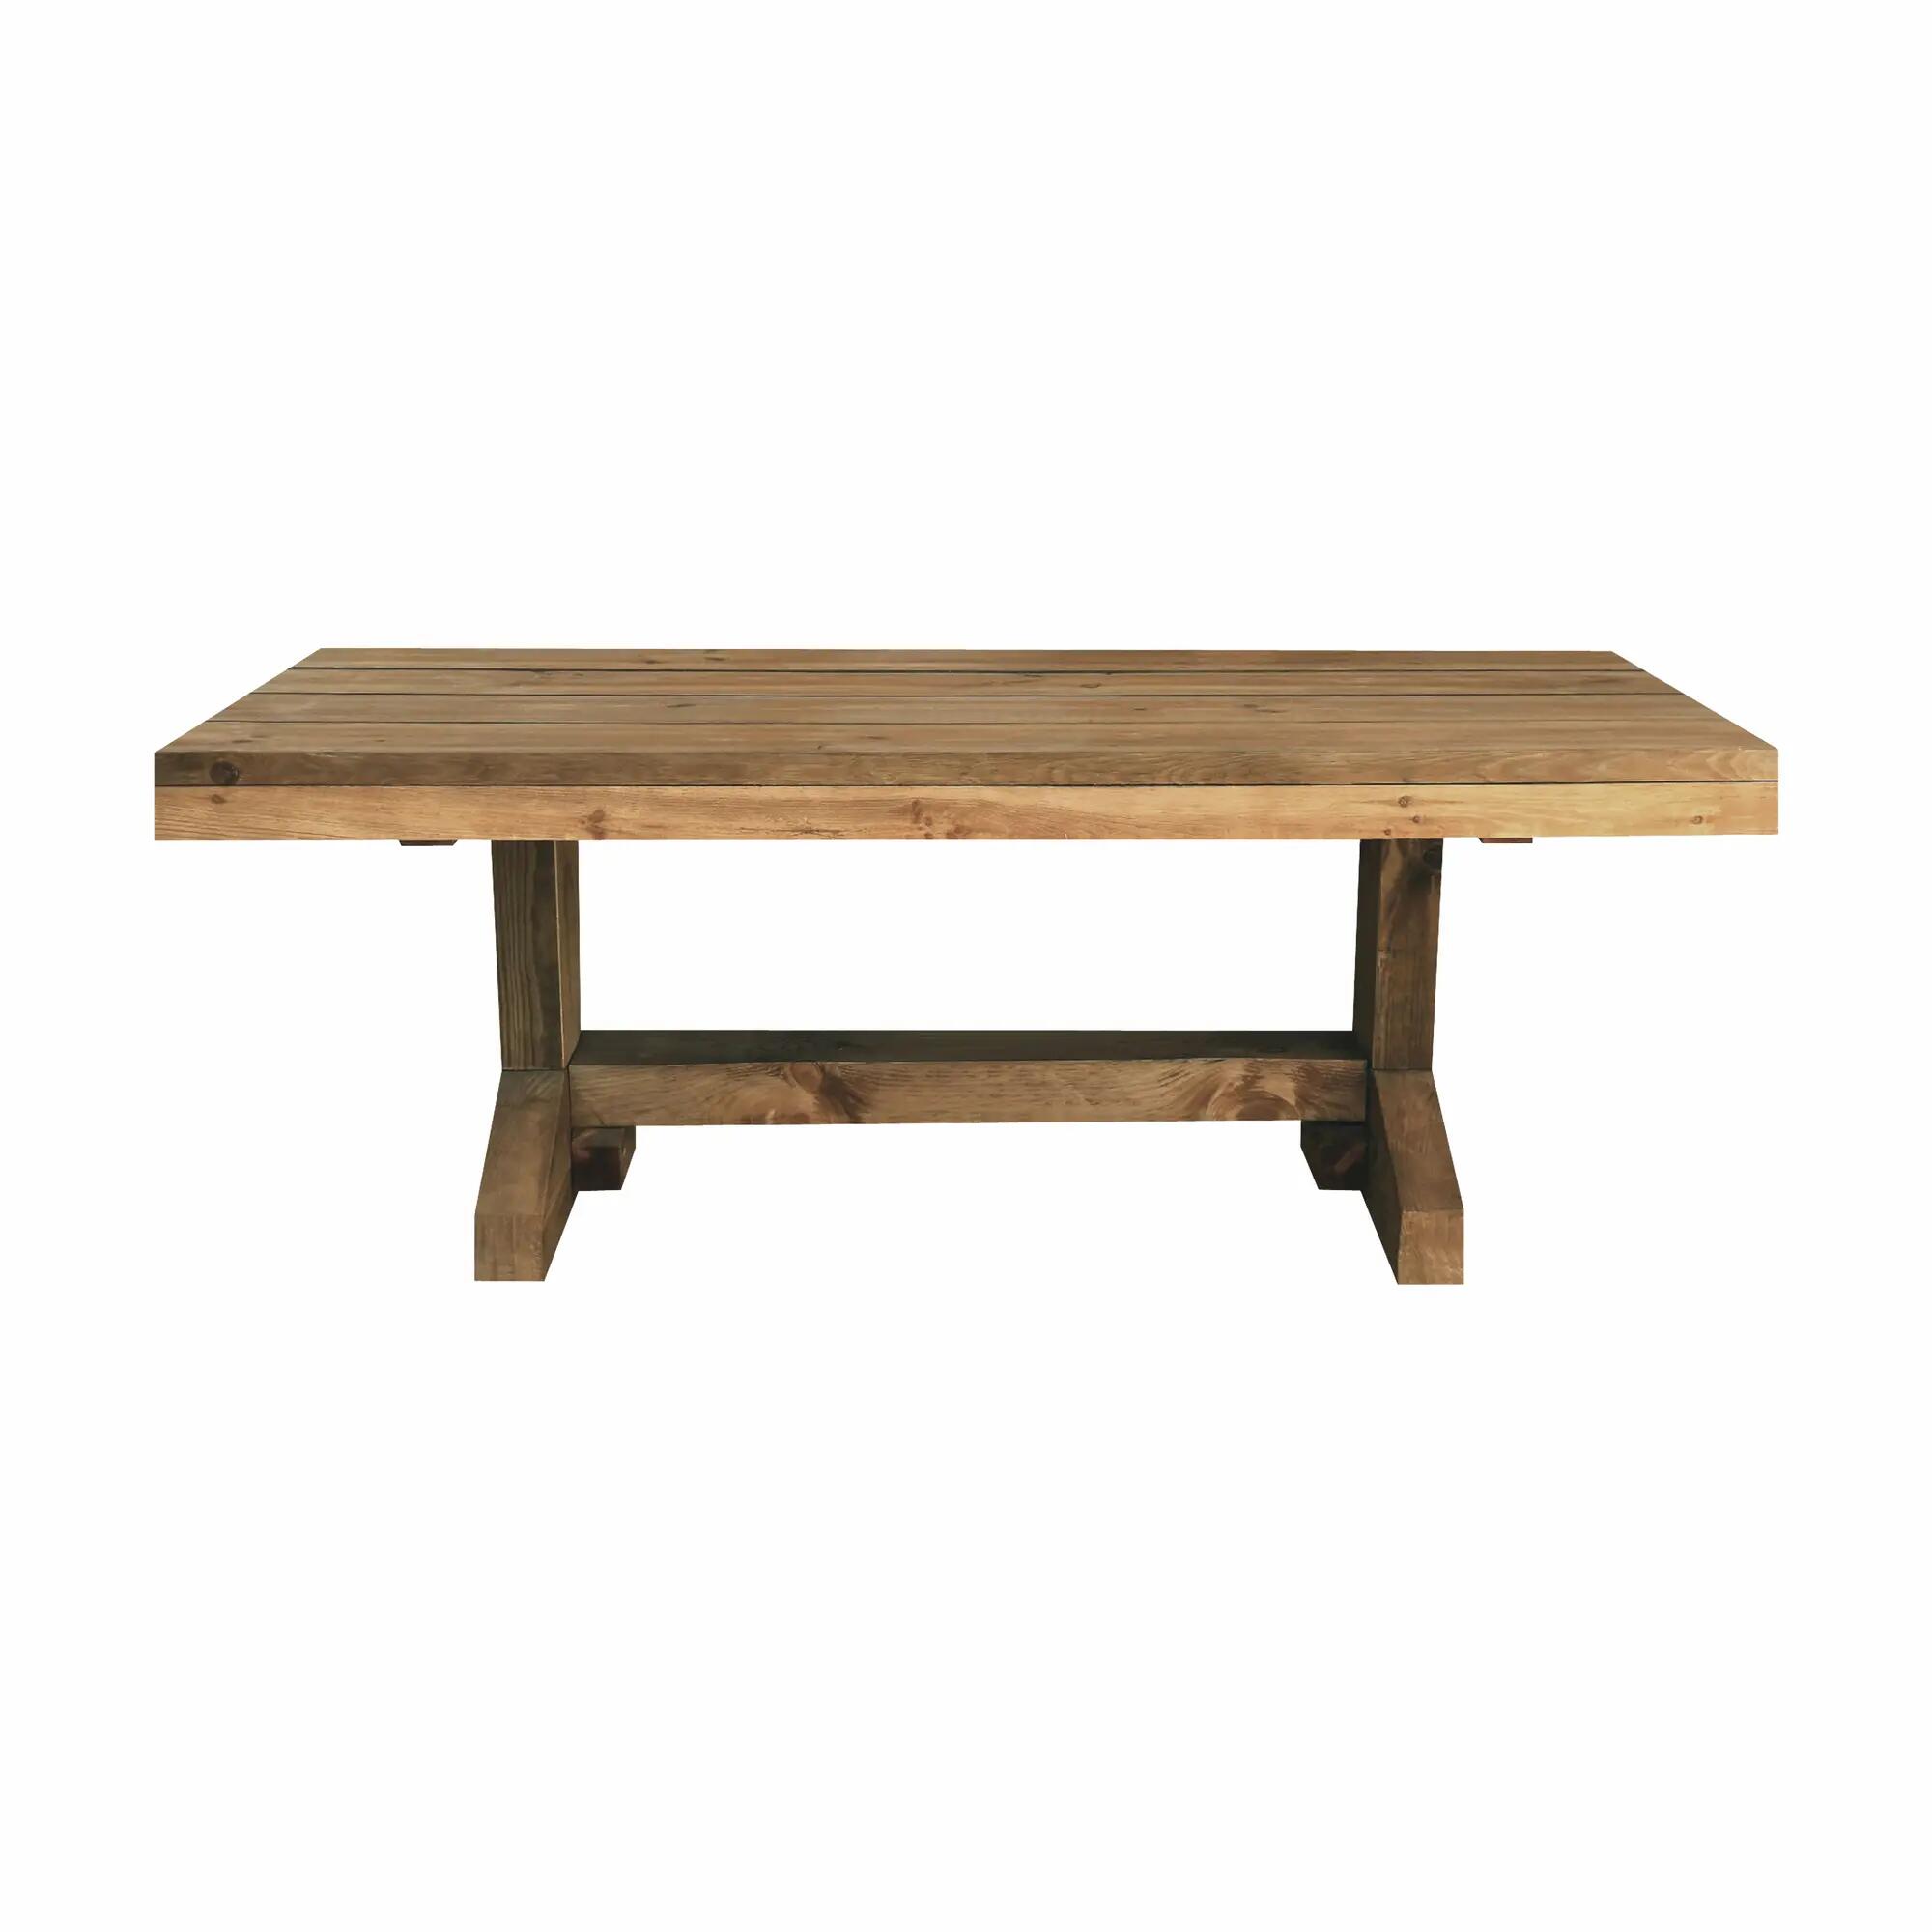 Mesa de jardín de madera express marrón de 280x75x95 cm